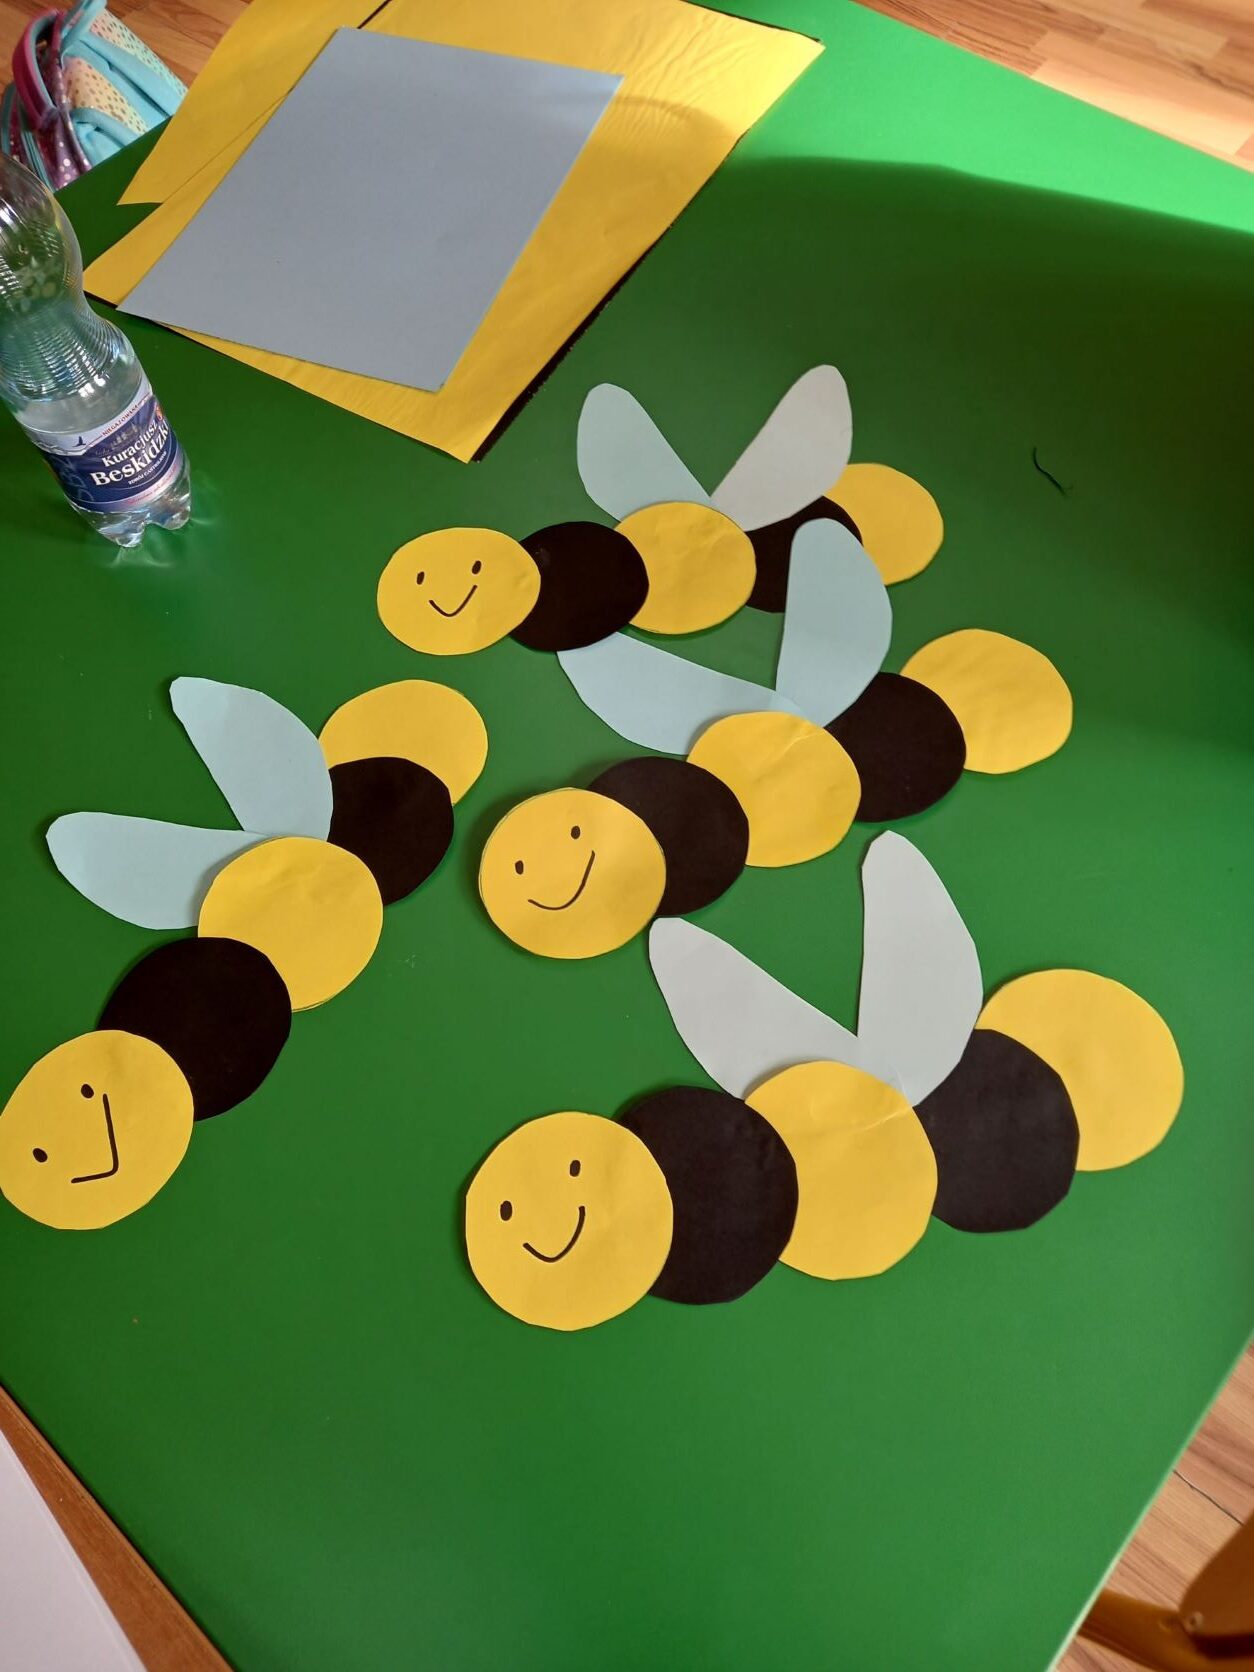 Pszczółki wykonane przez uczniów